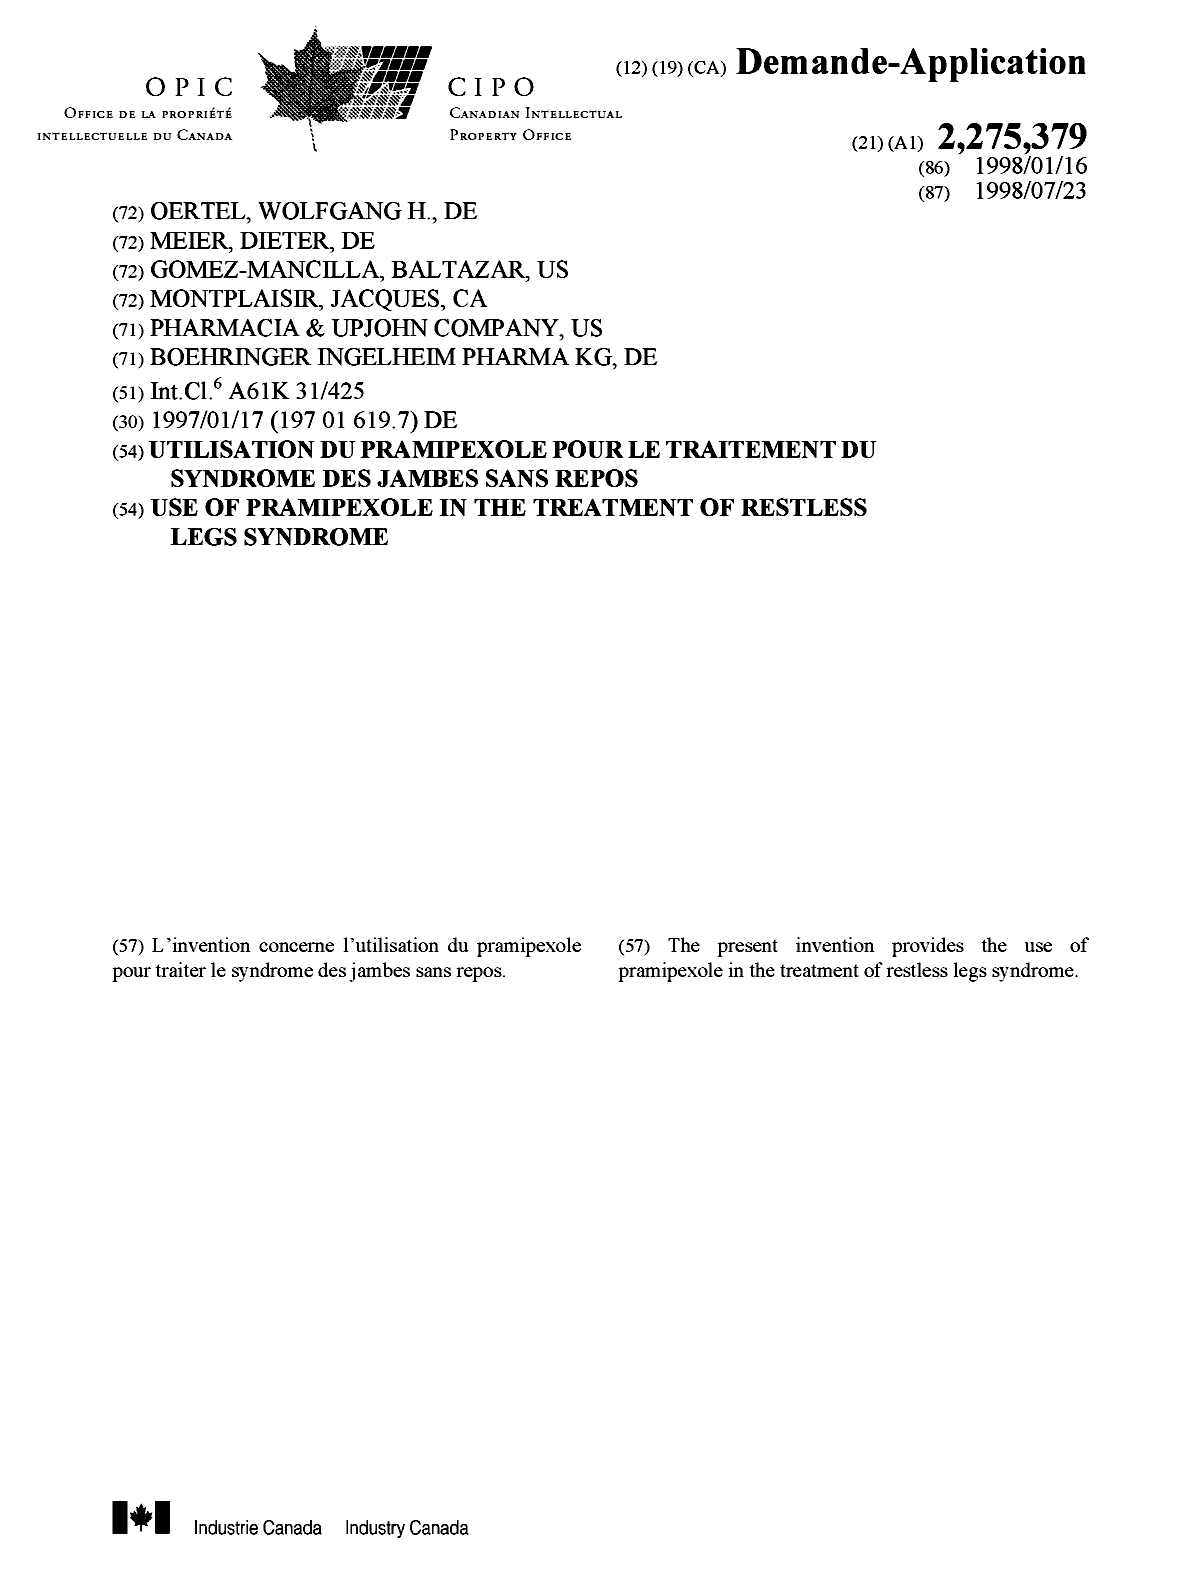 Document de brevet canadien 2275379. Page couverture 19990910. Image 1 de 1